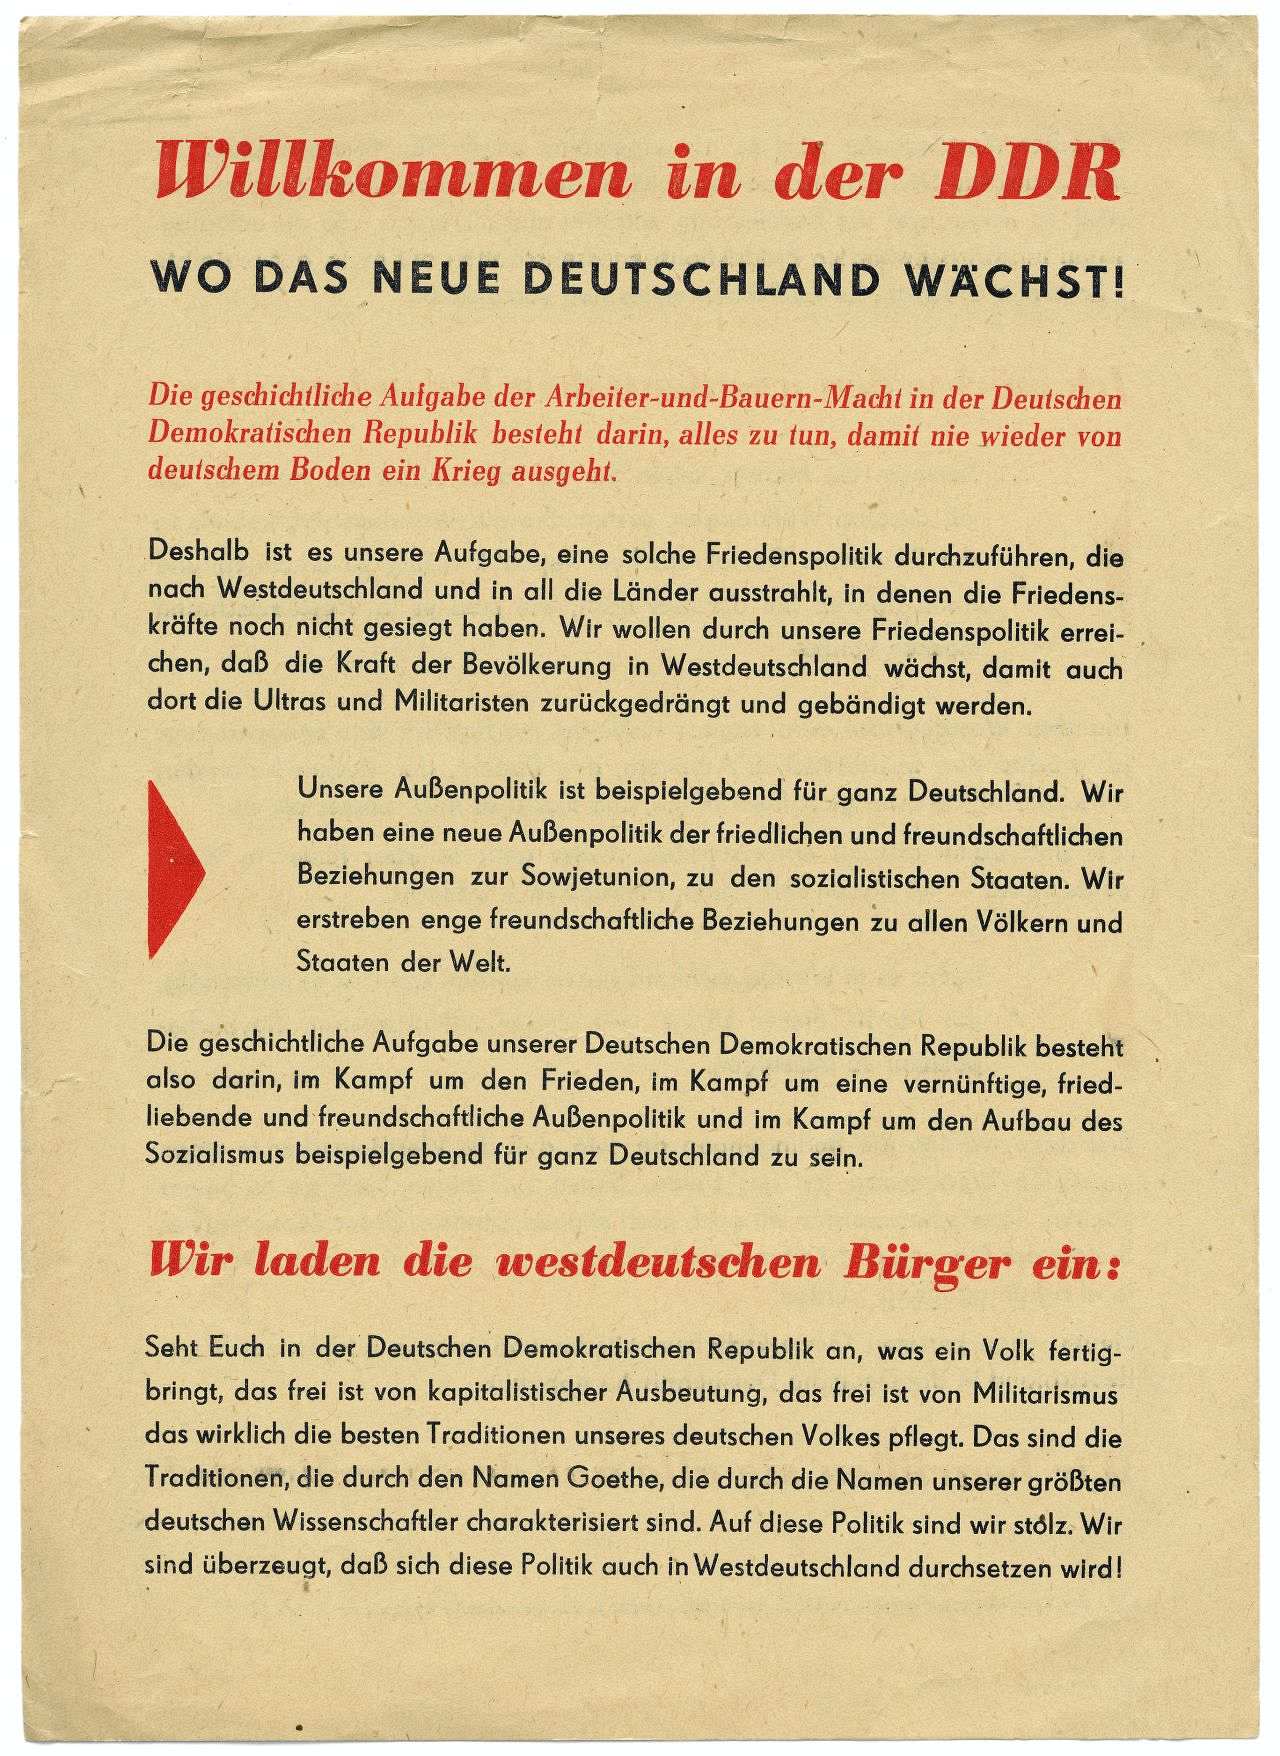 Beidseitig bedrucktes, kleinformatiges Flugblatt. Oben, in rotem und schwarzem Fettdruck: Willkommen in der DDR. Wo das neue Deutschland wächst!Es folgt ein kurzer roter Vorspann und danach schwarzer Fließtext. 